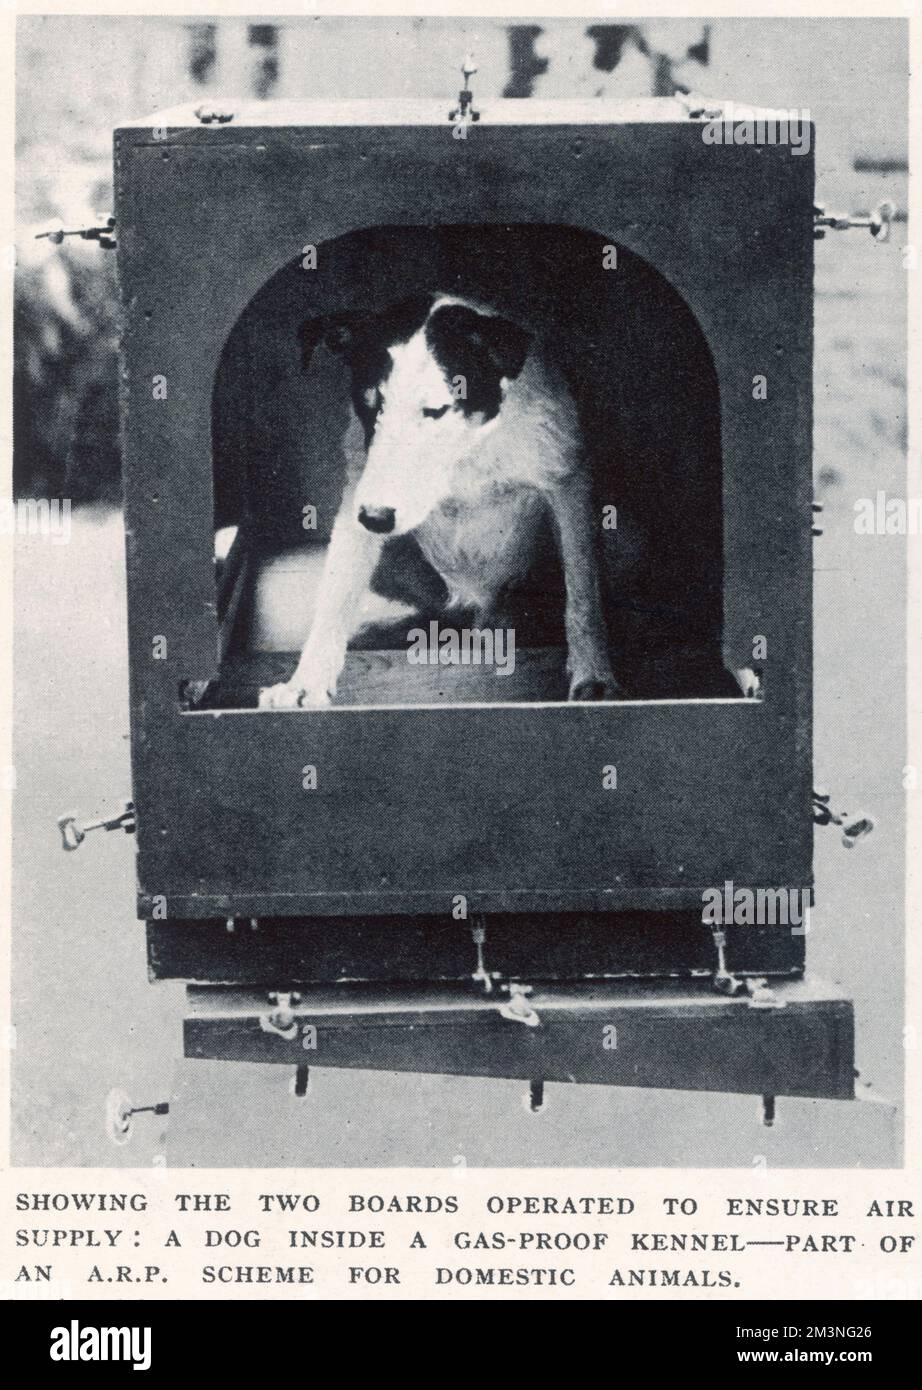 Un cane all'interno di un canile a prova di gas, parte di un sistema A.R.P. per gli animali domestici allo scoppio della seconda guerra mondiale. Data: Settembre 1939 Foto Stock